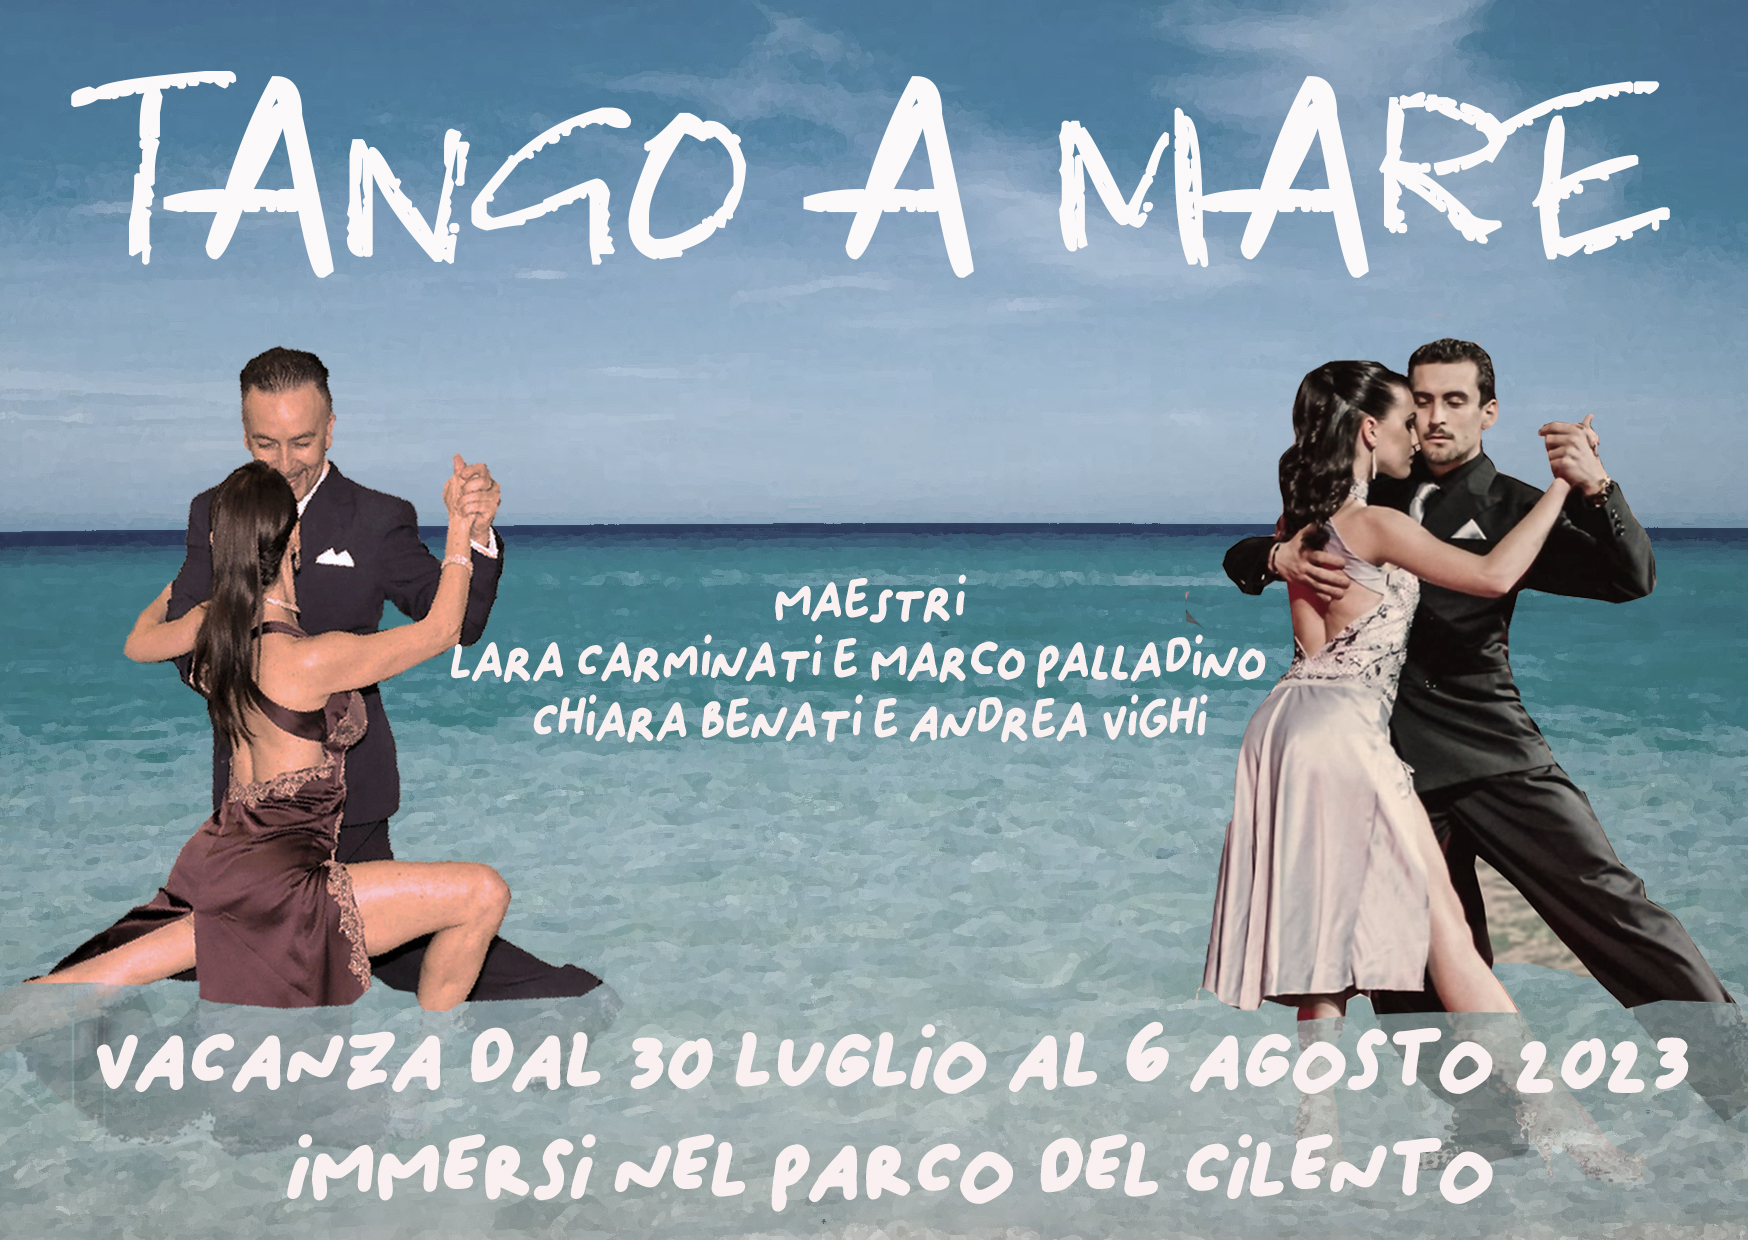 Vacanza Tango...a Mare! Dal 30 luglio al 6 agosto 2023